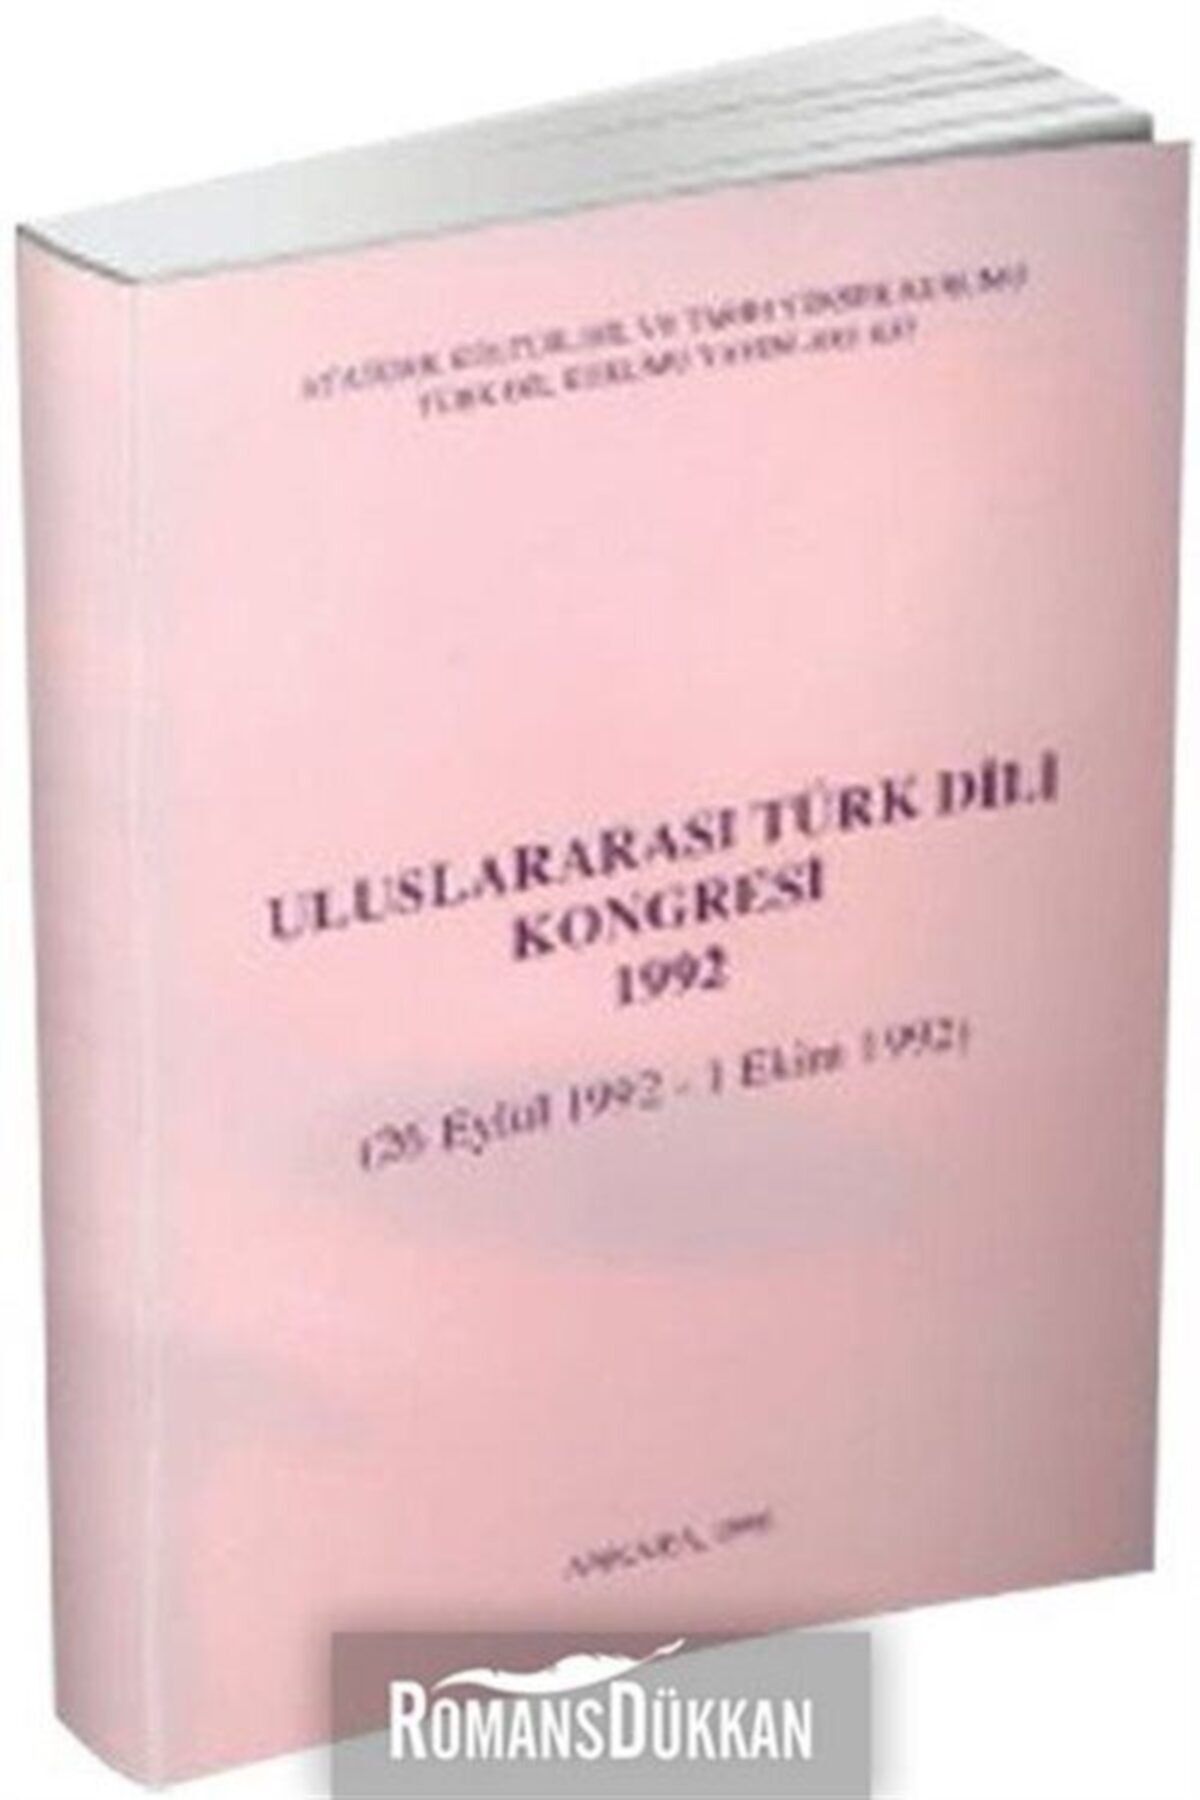 Türk Dil Kurumu Yayınları Uluslararası Türk Dili Kongresi 1992 & 26 Eylül 1992-1 Ekim 1992